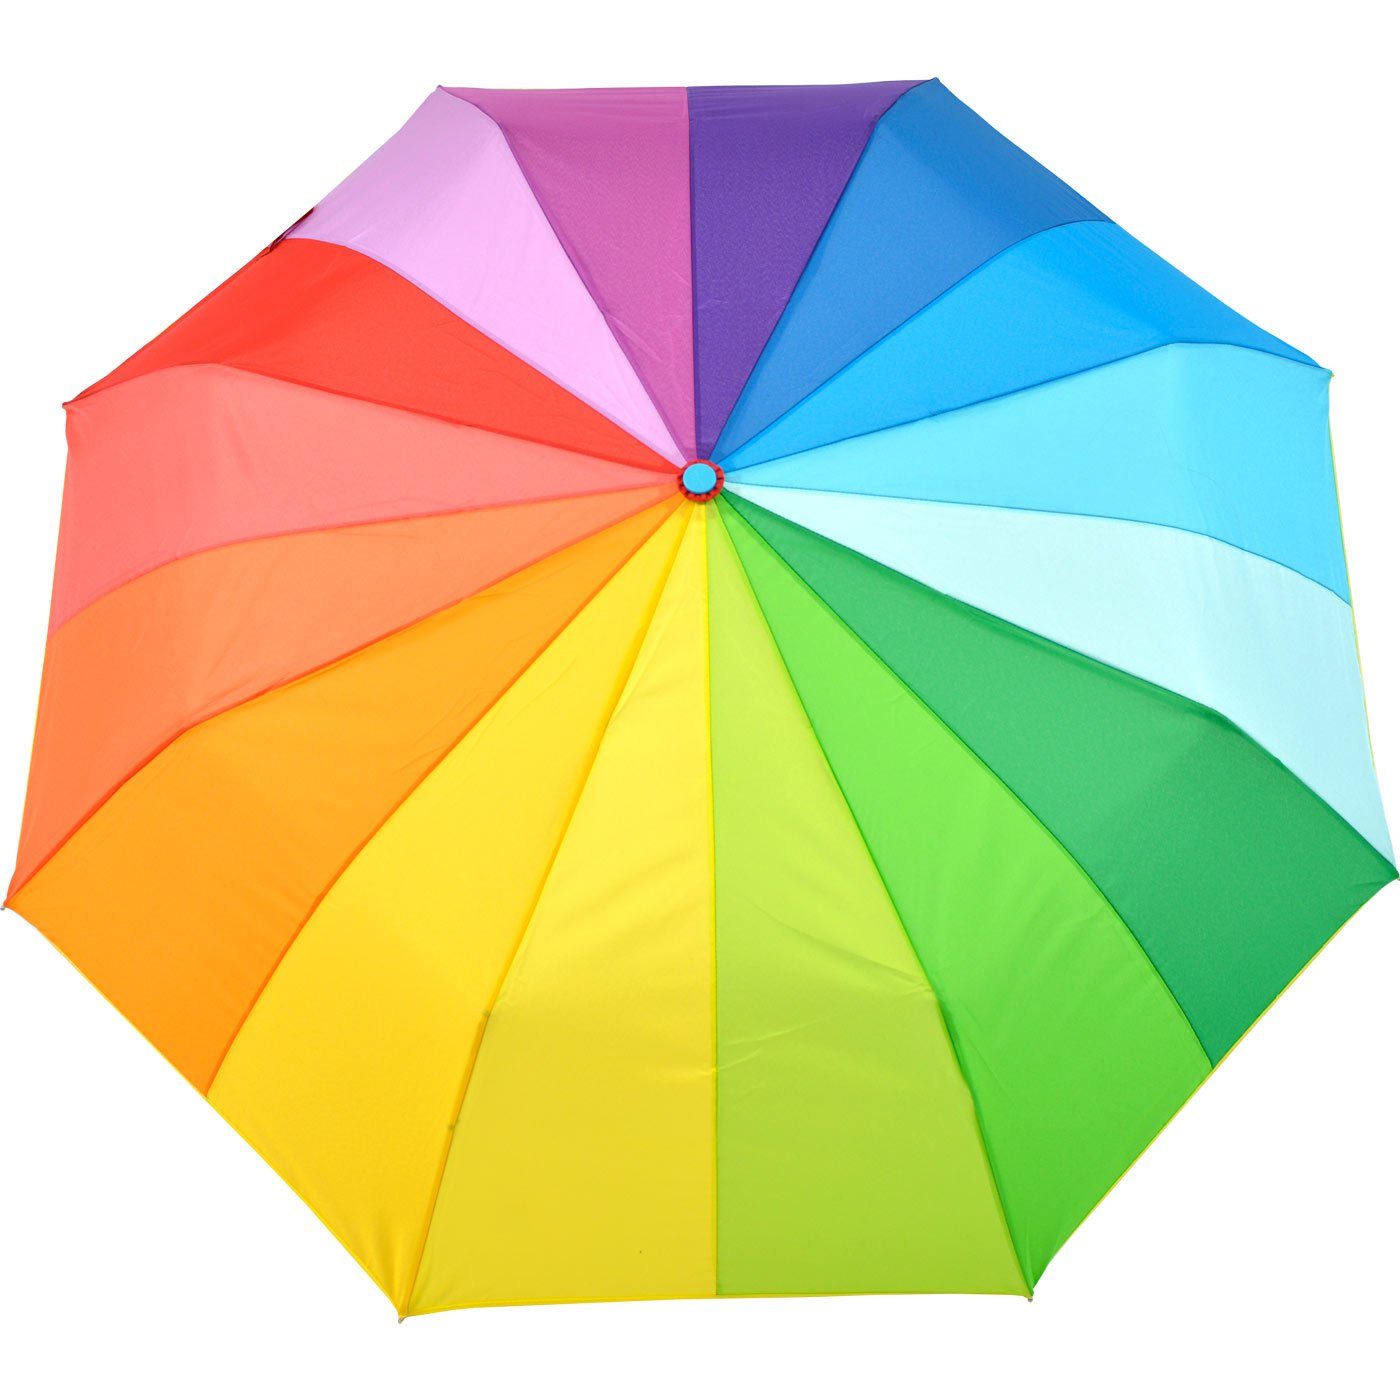 Taschenregenschirm - rainbow farbenfroh 16 farbig, iX-brella 16-color pocket iX-brella kleiner Taschenschirm